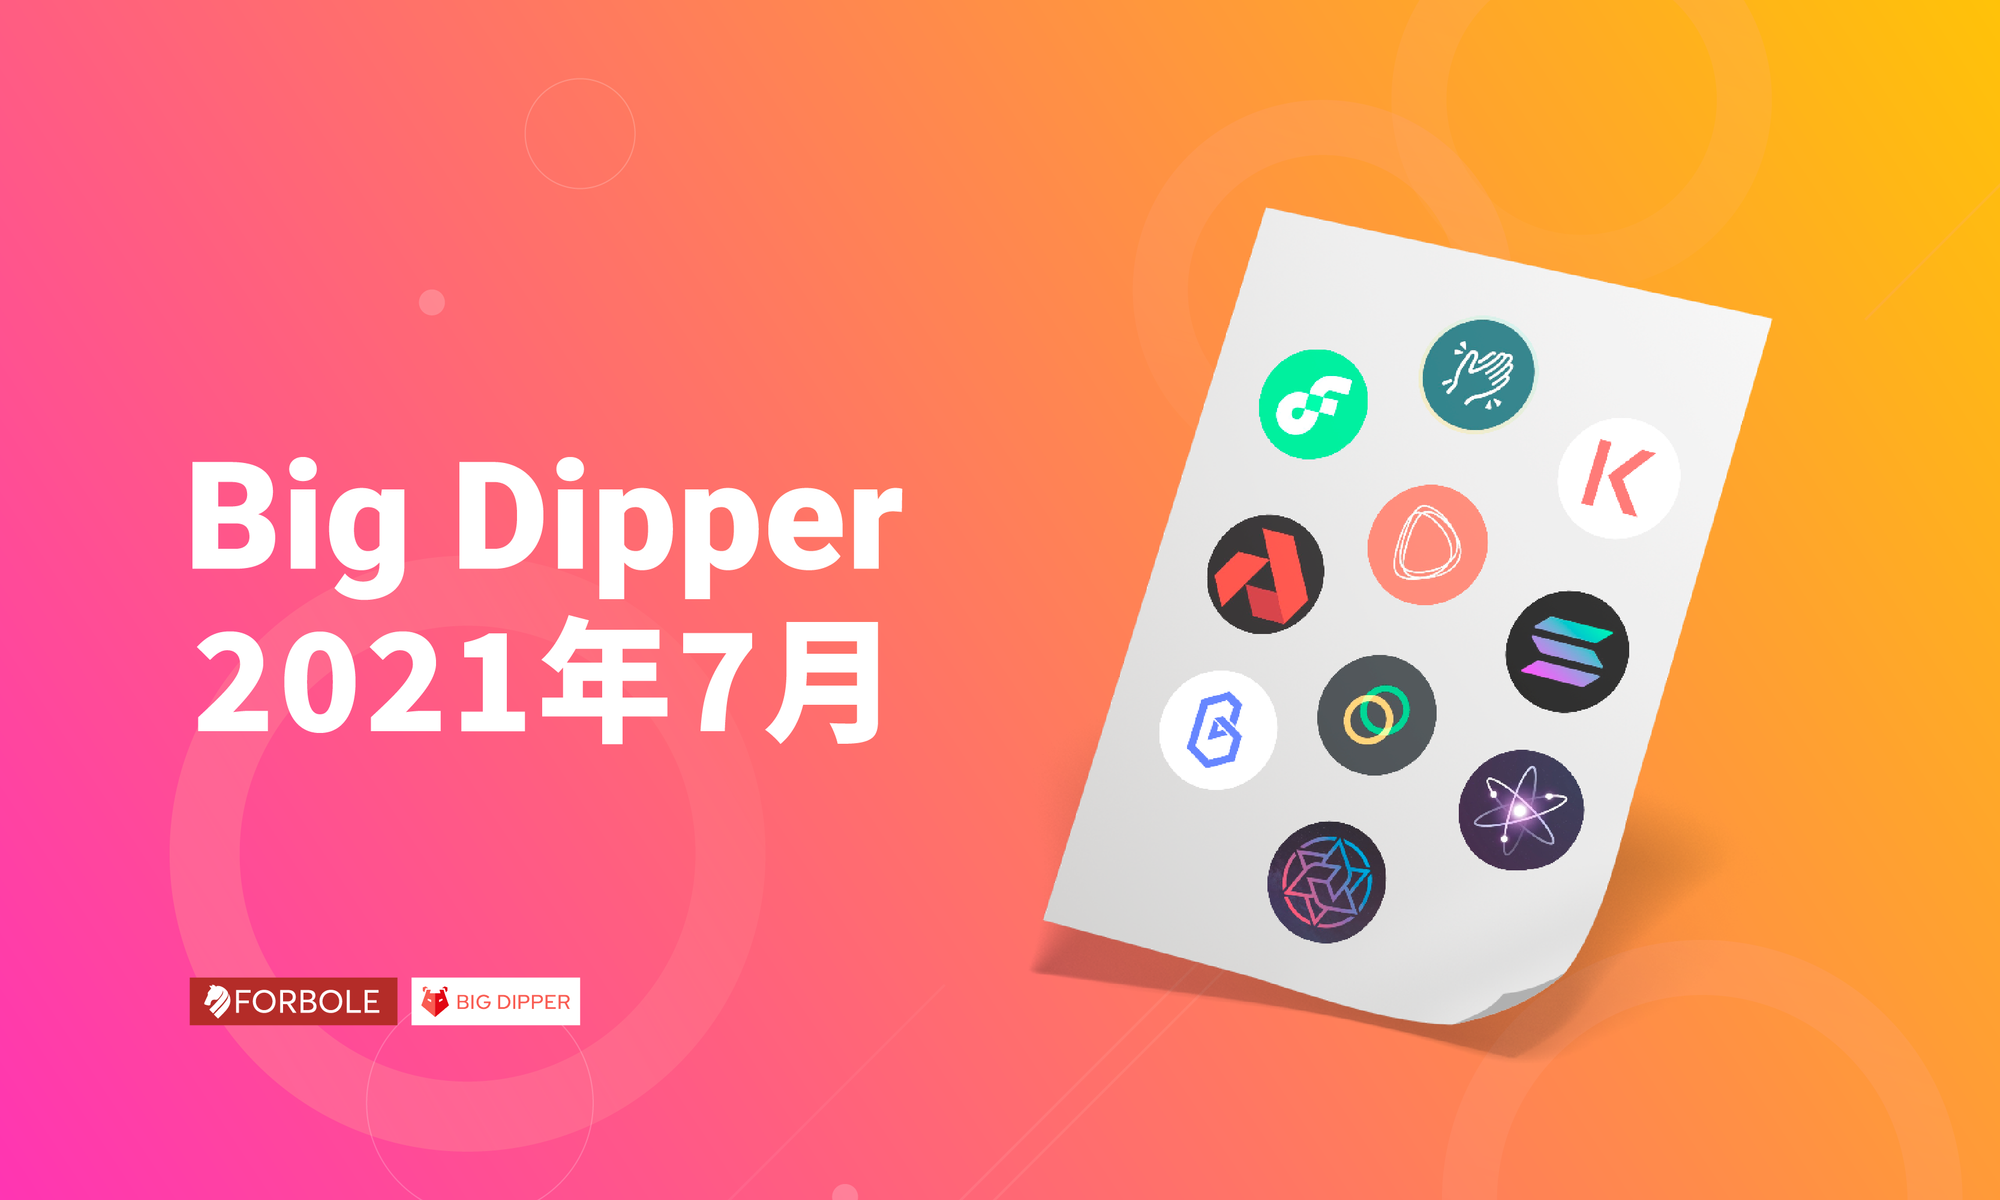 Big Dipper 每月回顧 - 2021 年 7 月